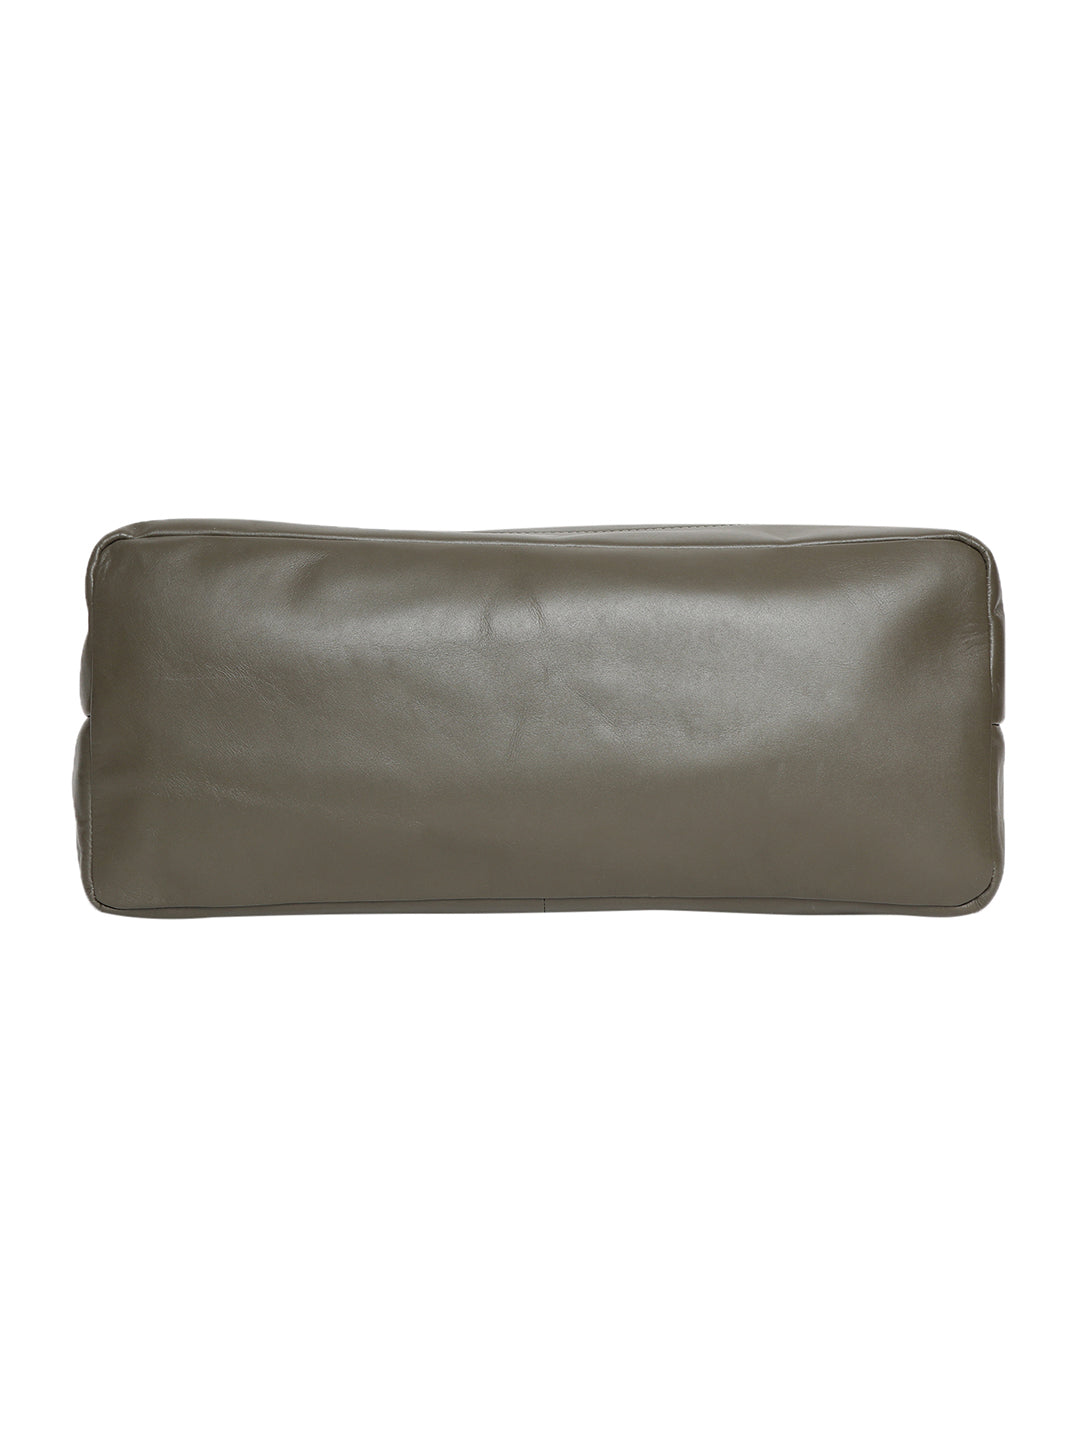 Veneto Dark Green Leather Tote Bag